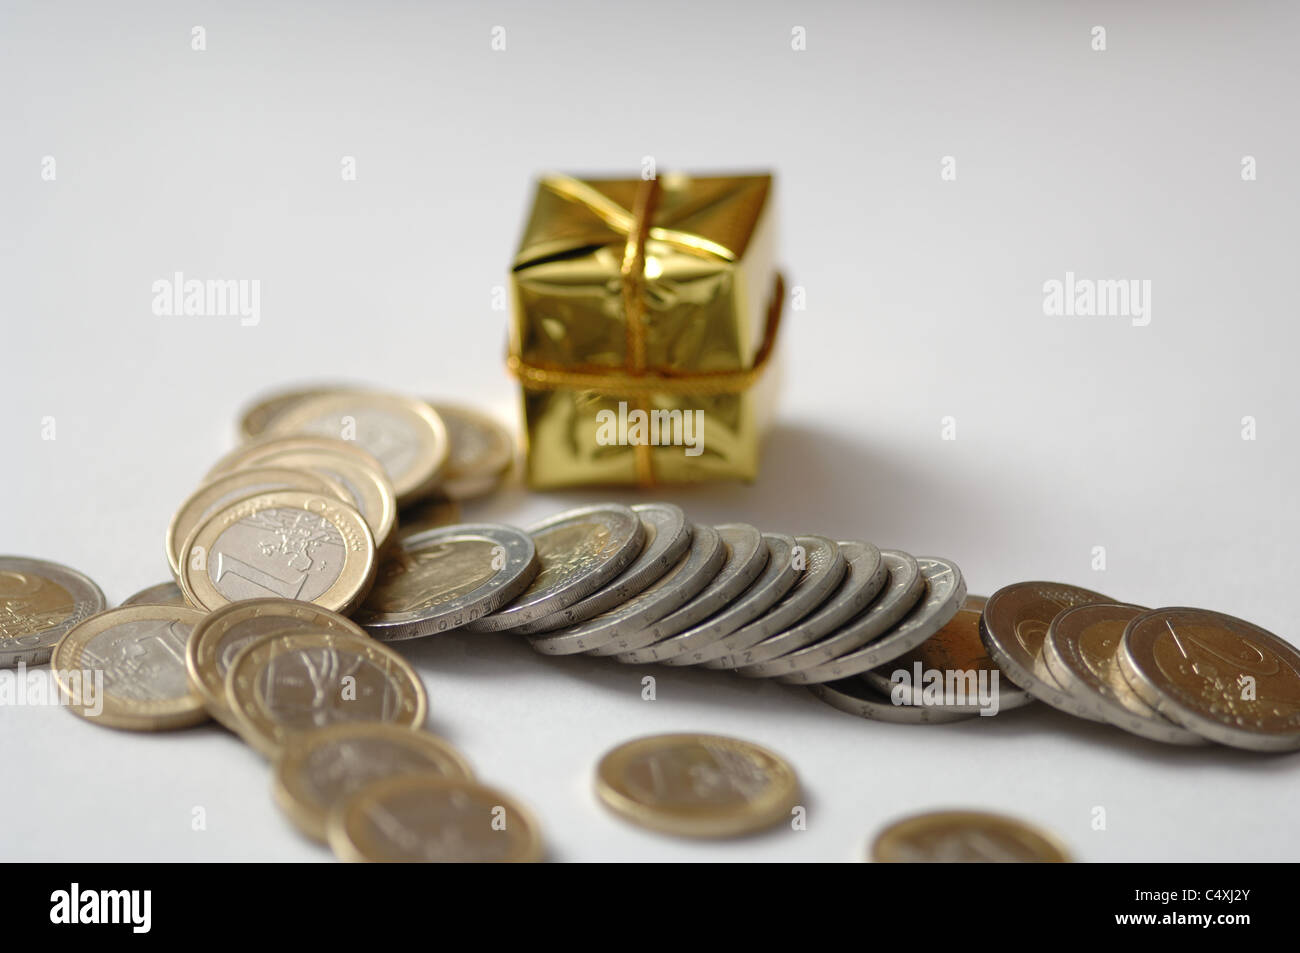 Geschenkanlass (Sammelbegriff), Geschenk, Paket, Gold (Farbe), klein, teuer, Münzgeld, mehrere, Symbol Stock Photo